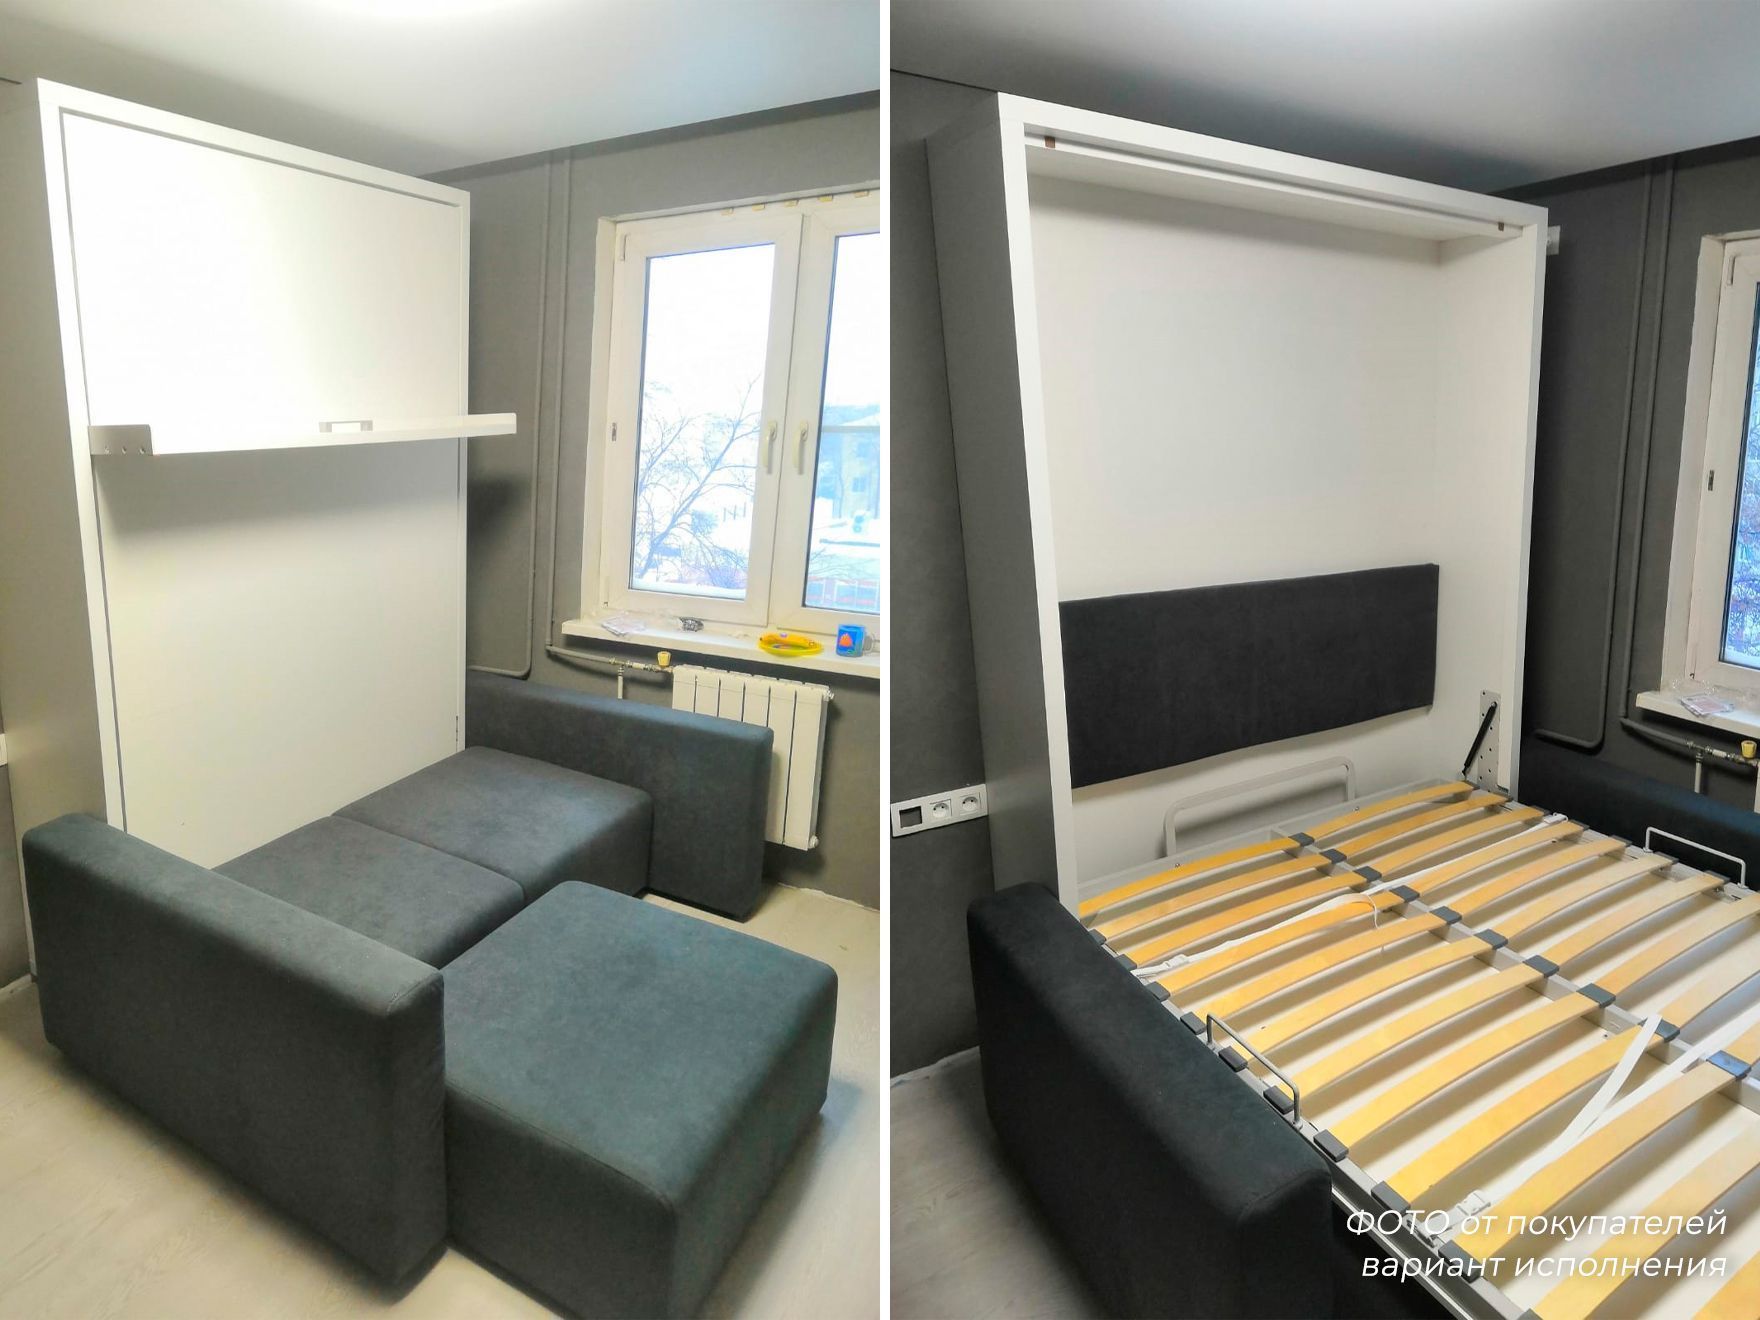 Двухъярусный диван-трансформер для малогабаритной квартиры